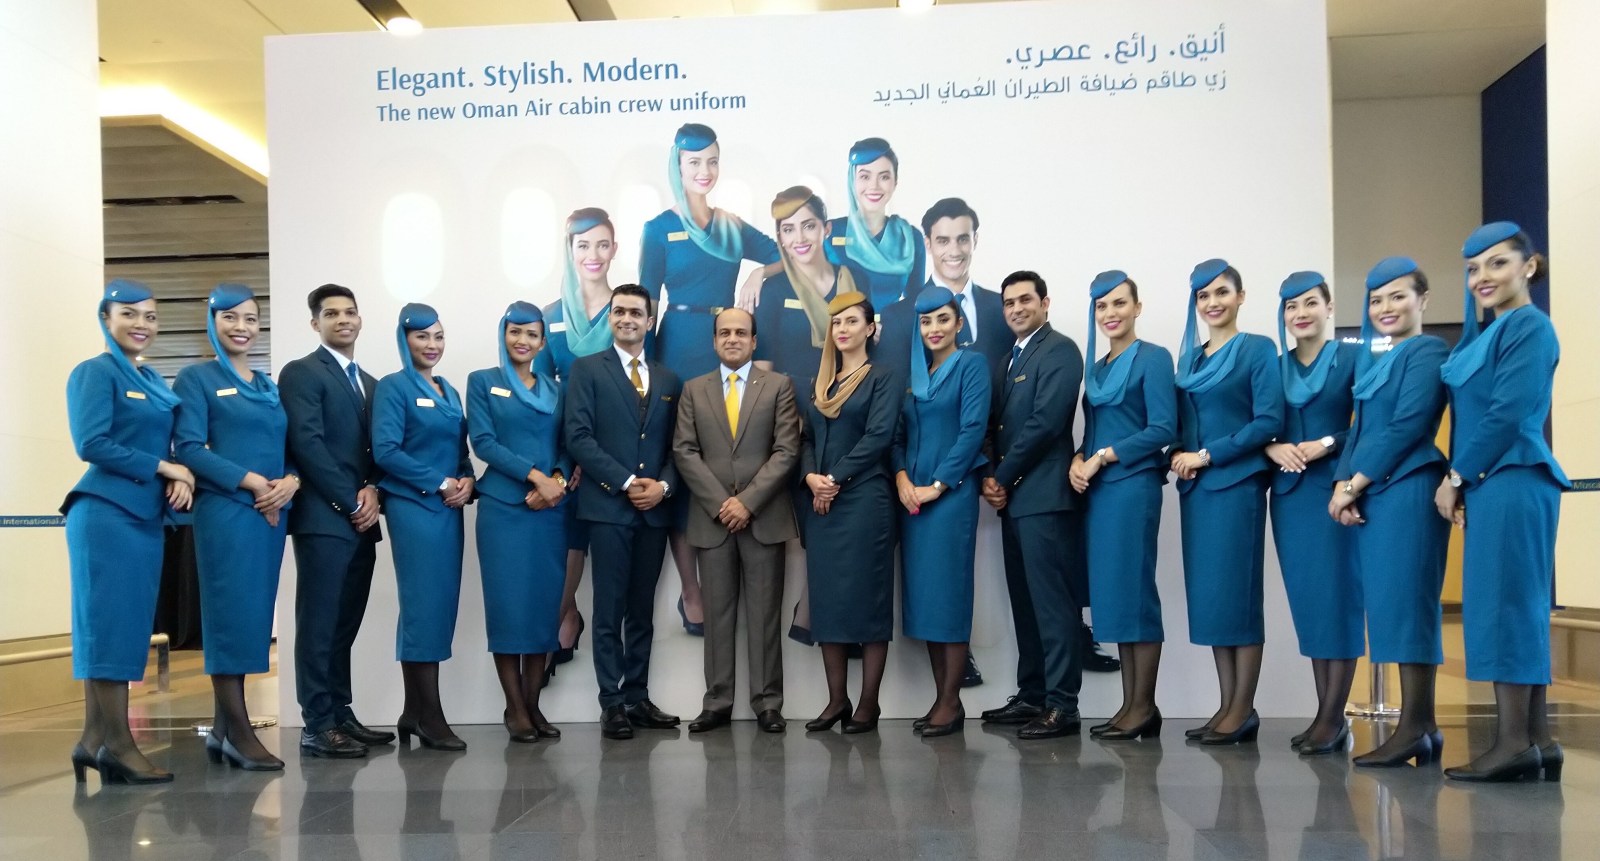 De Nouveaux Uniformes Pour Le Personnel D Oman Air